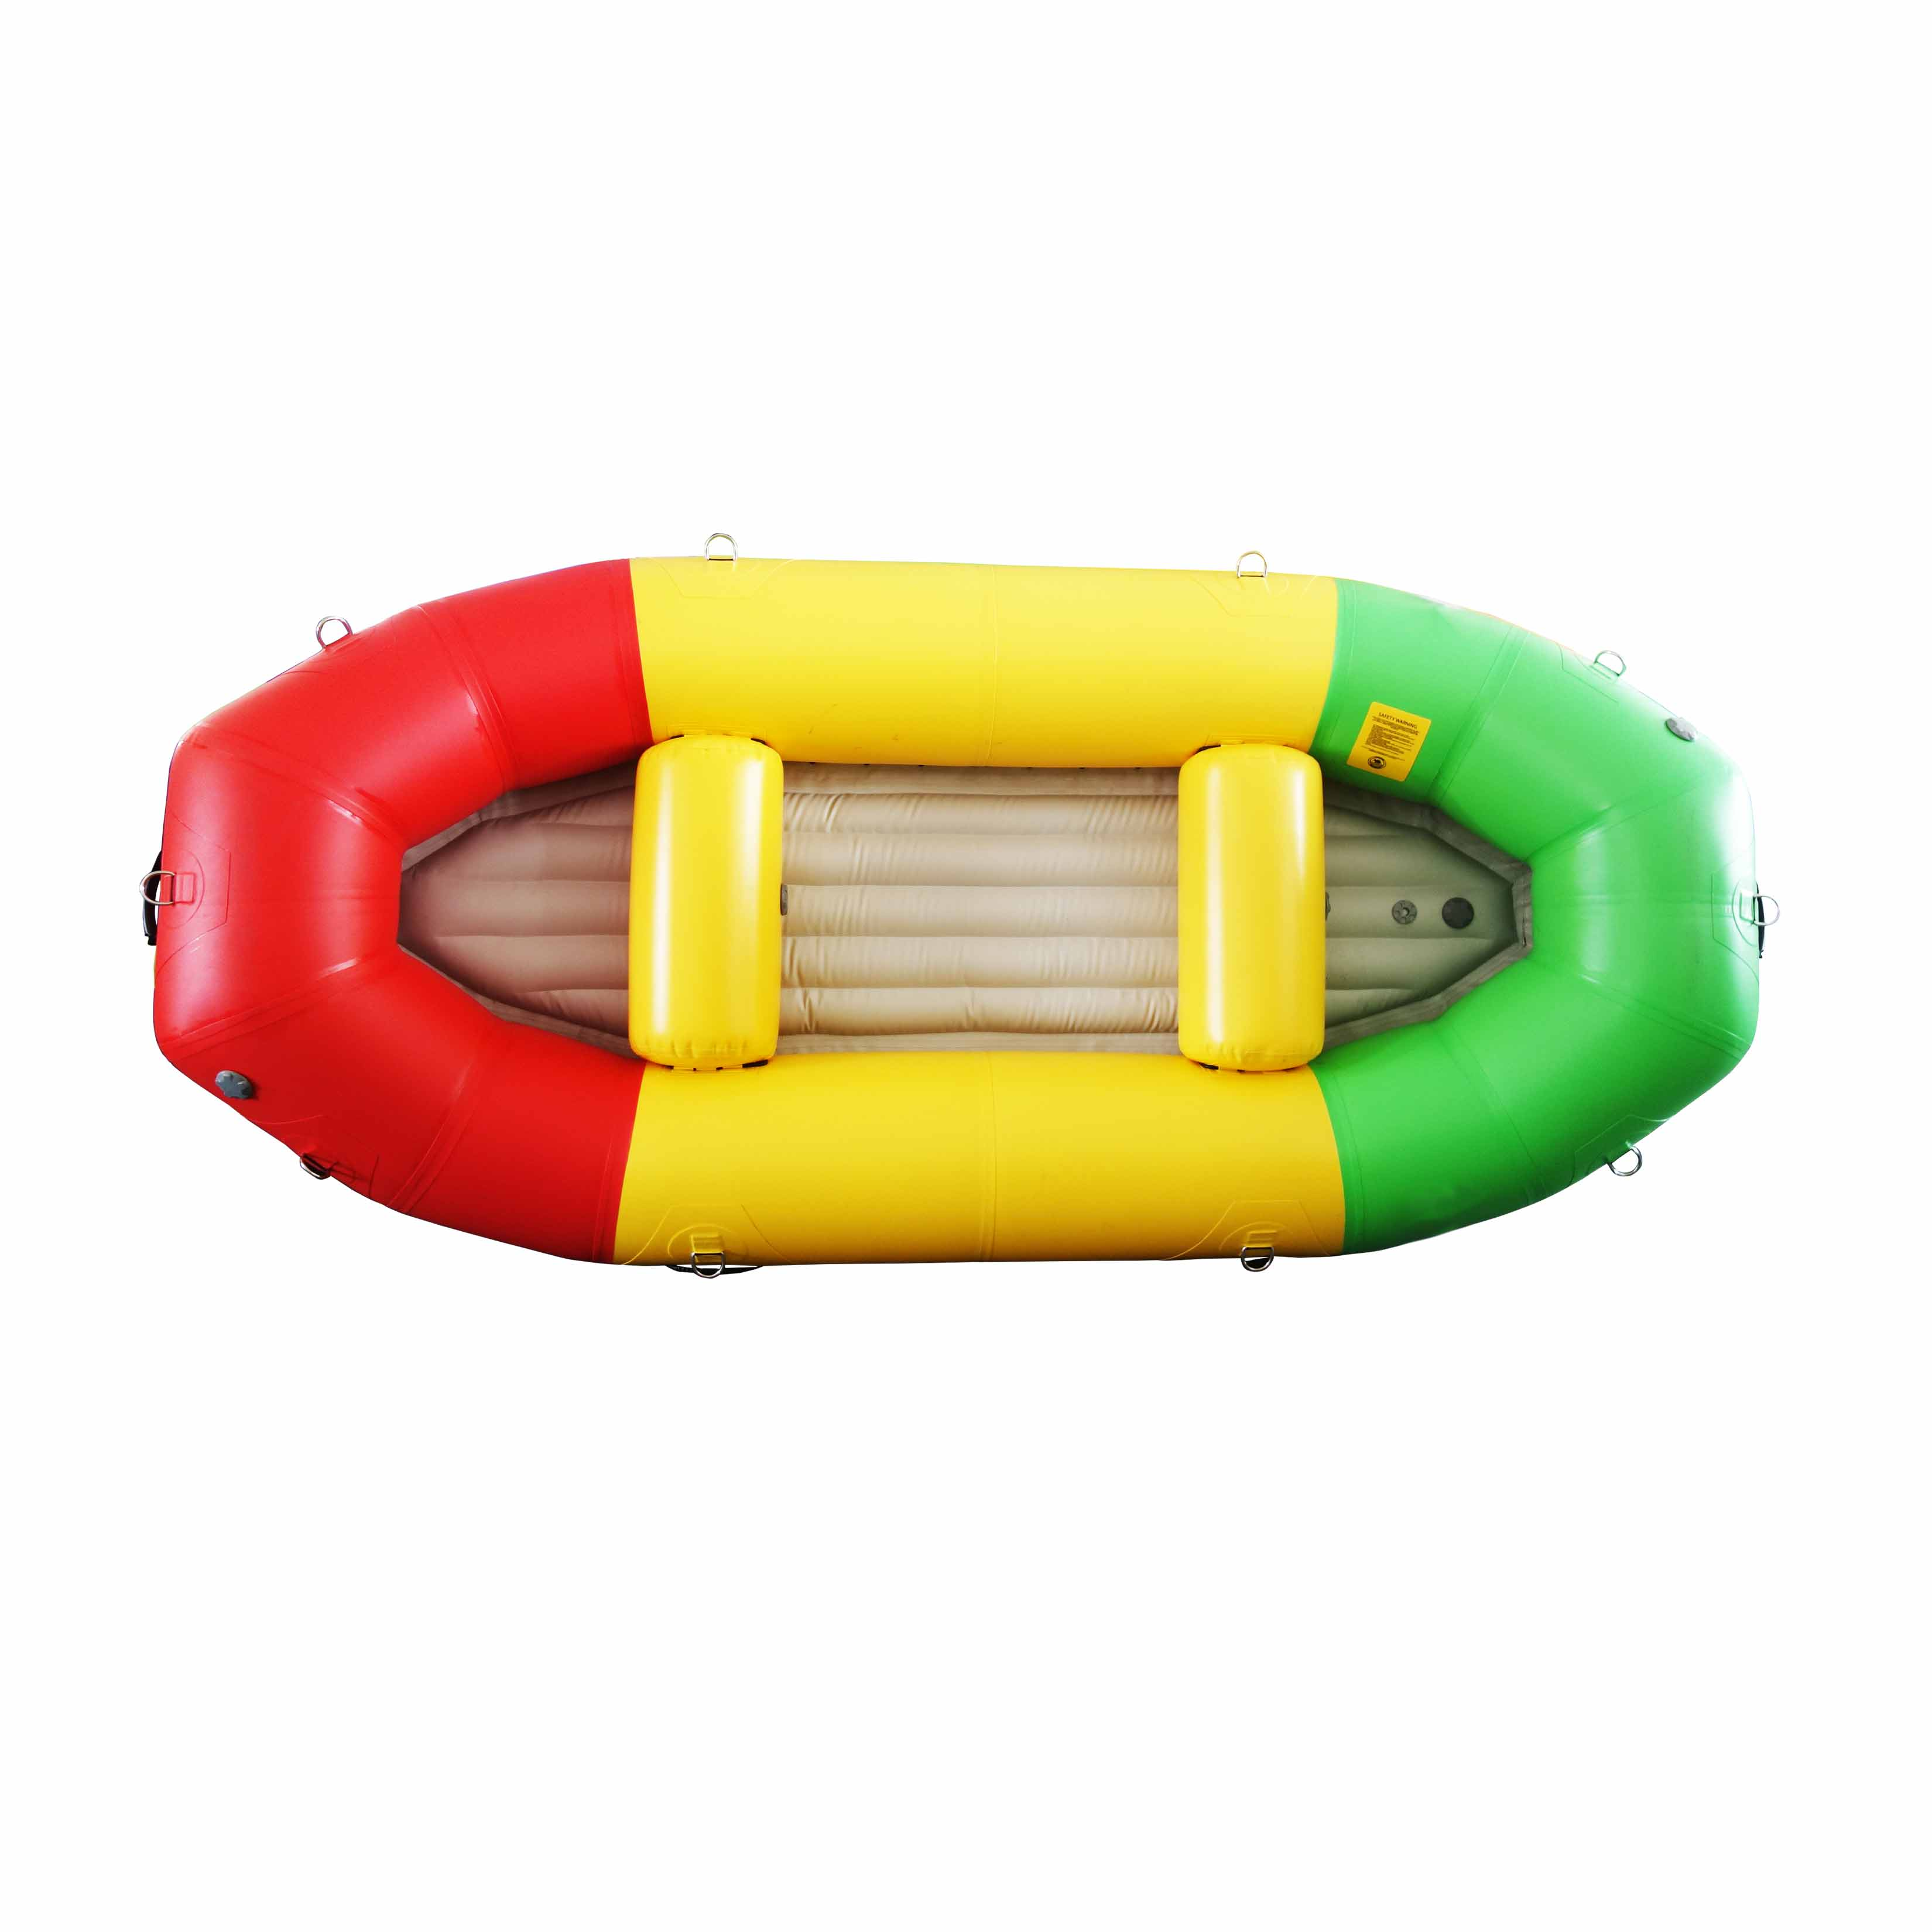 Bote de rescate de rafting en agua blanca con piso inflable de pvc de colores mezclados